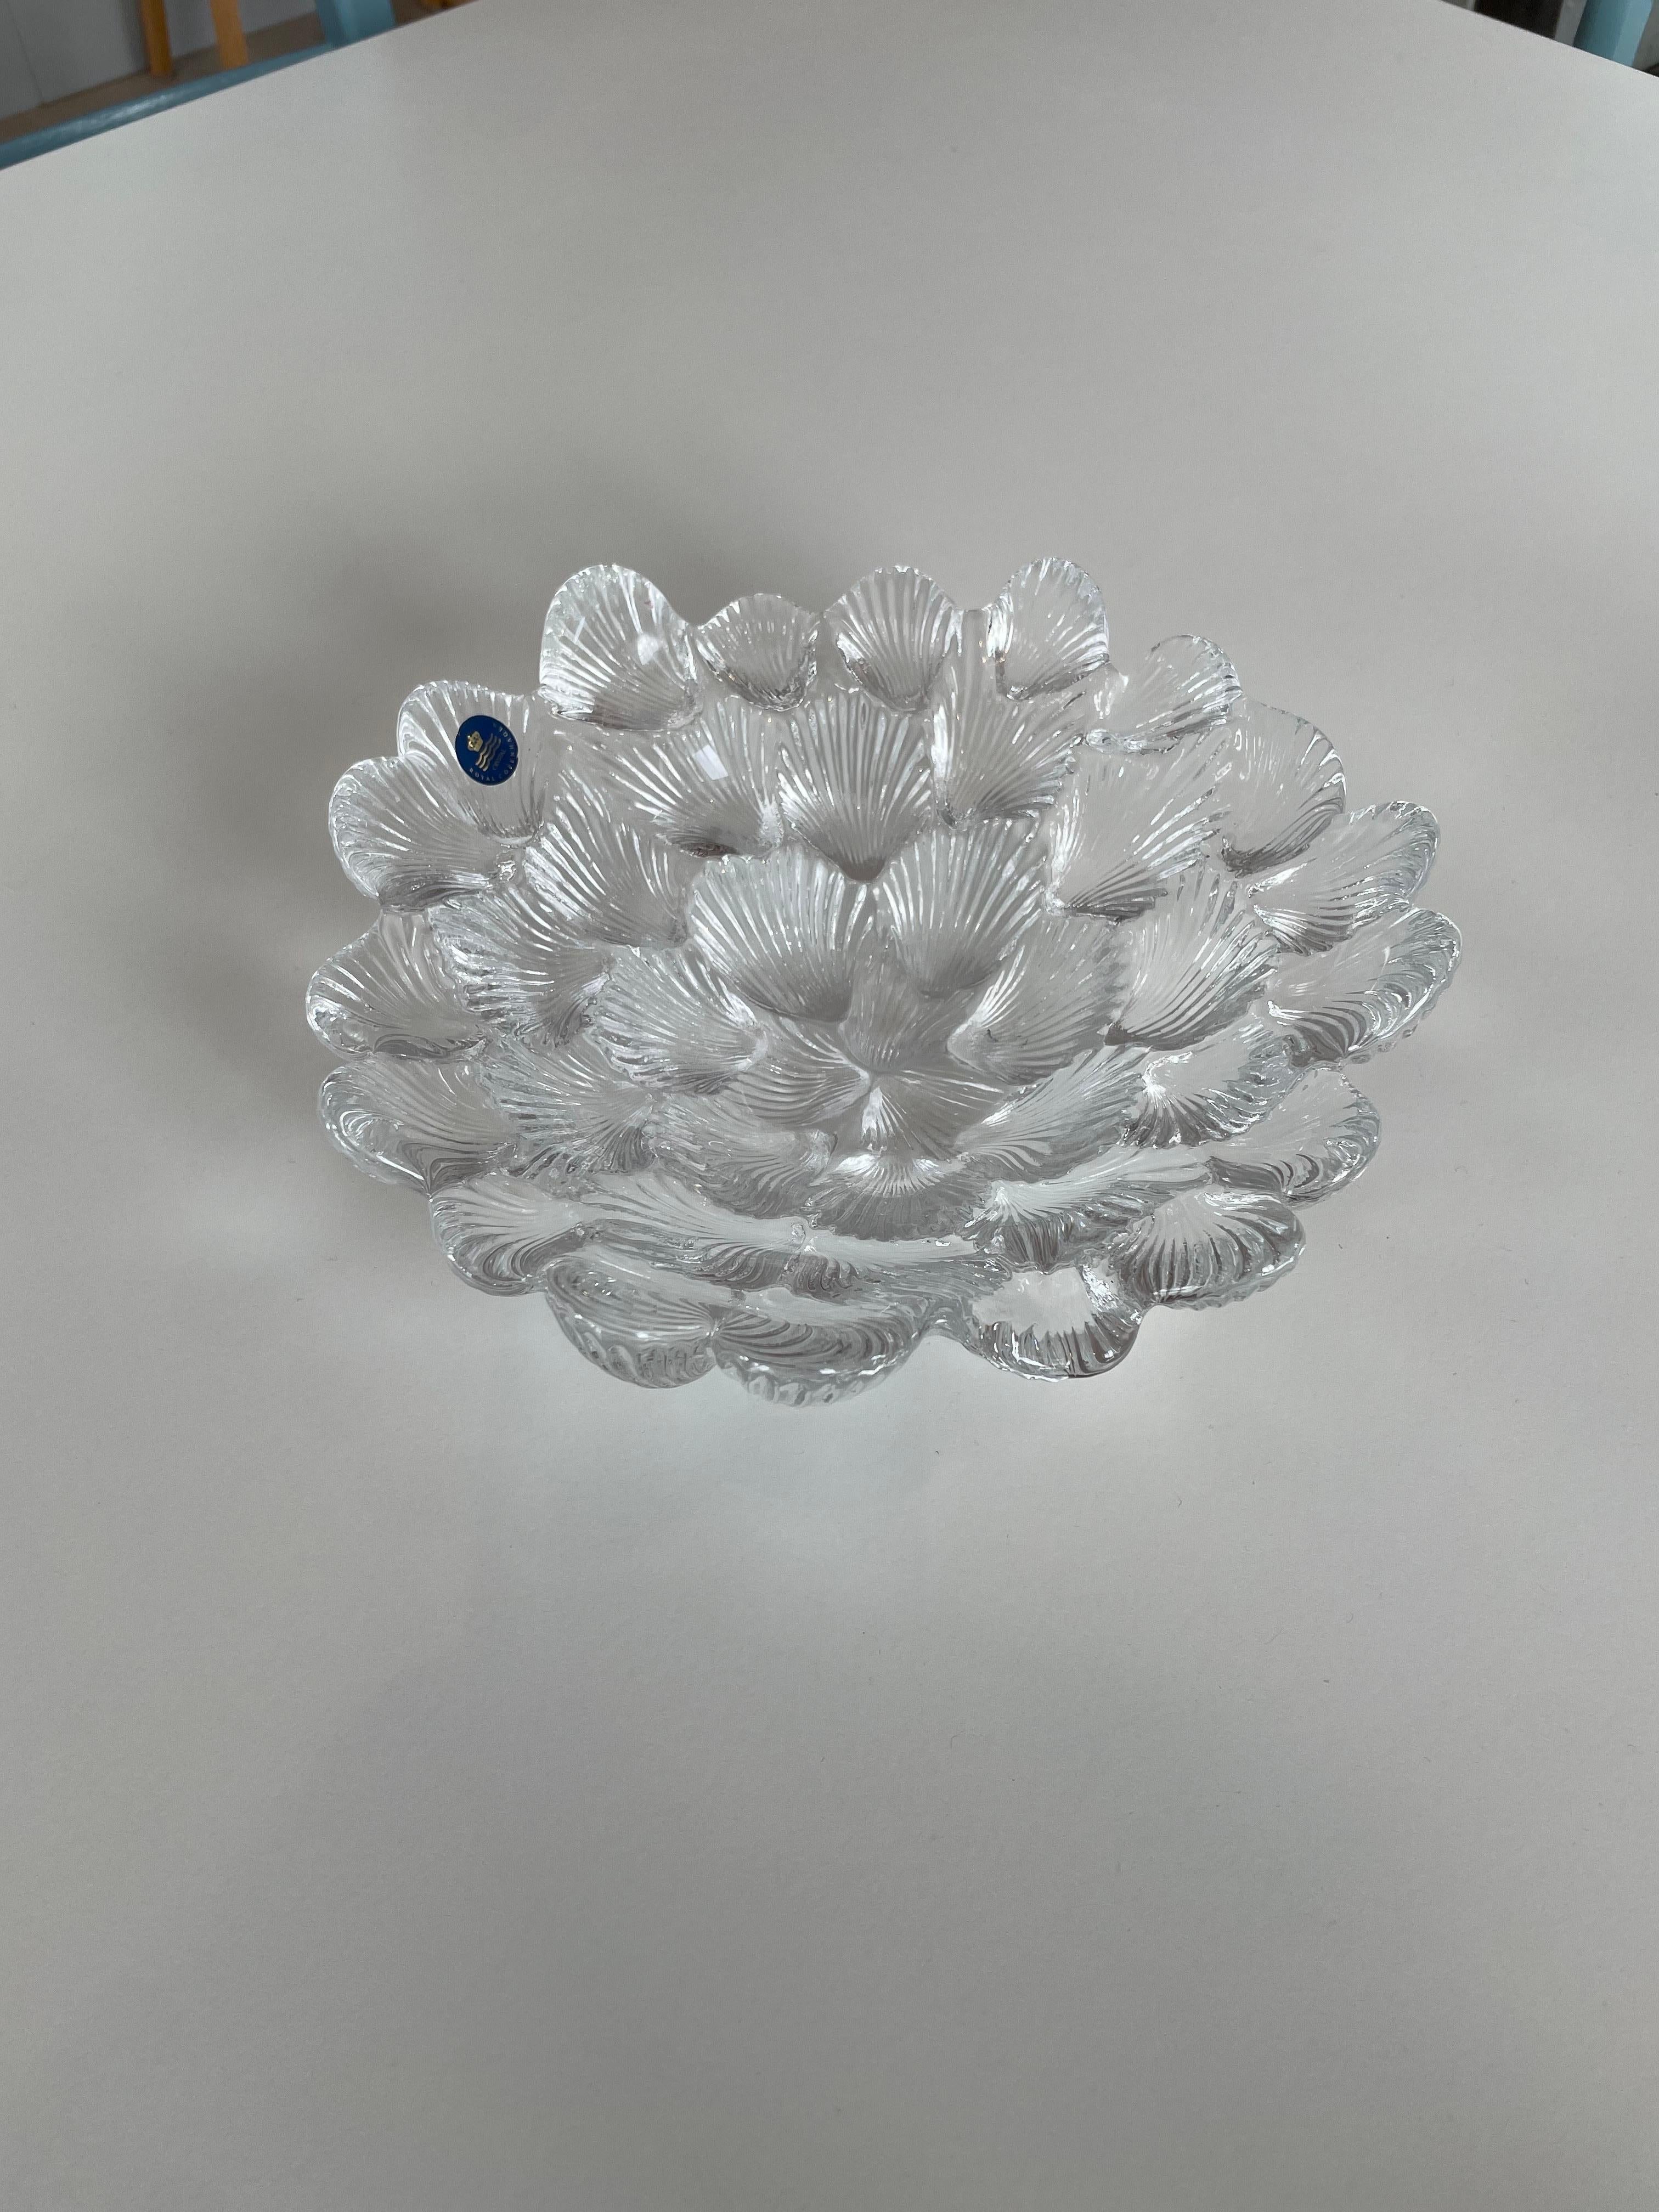 Royal Copenhagen Kristallschale aus den 1980er Jahren.
Entworfen von dem bekannten Künstler Per Lutken mit dem Titel Musling (Muschel).
Wunderschöne Kristallschale in Form einer Masse von Muschelschalen. Die Unterseite ist strukturiert, die